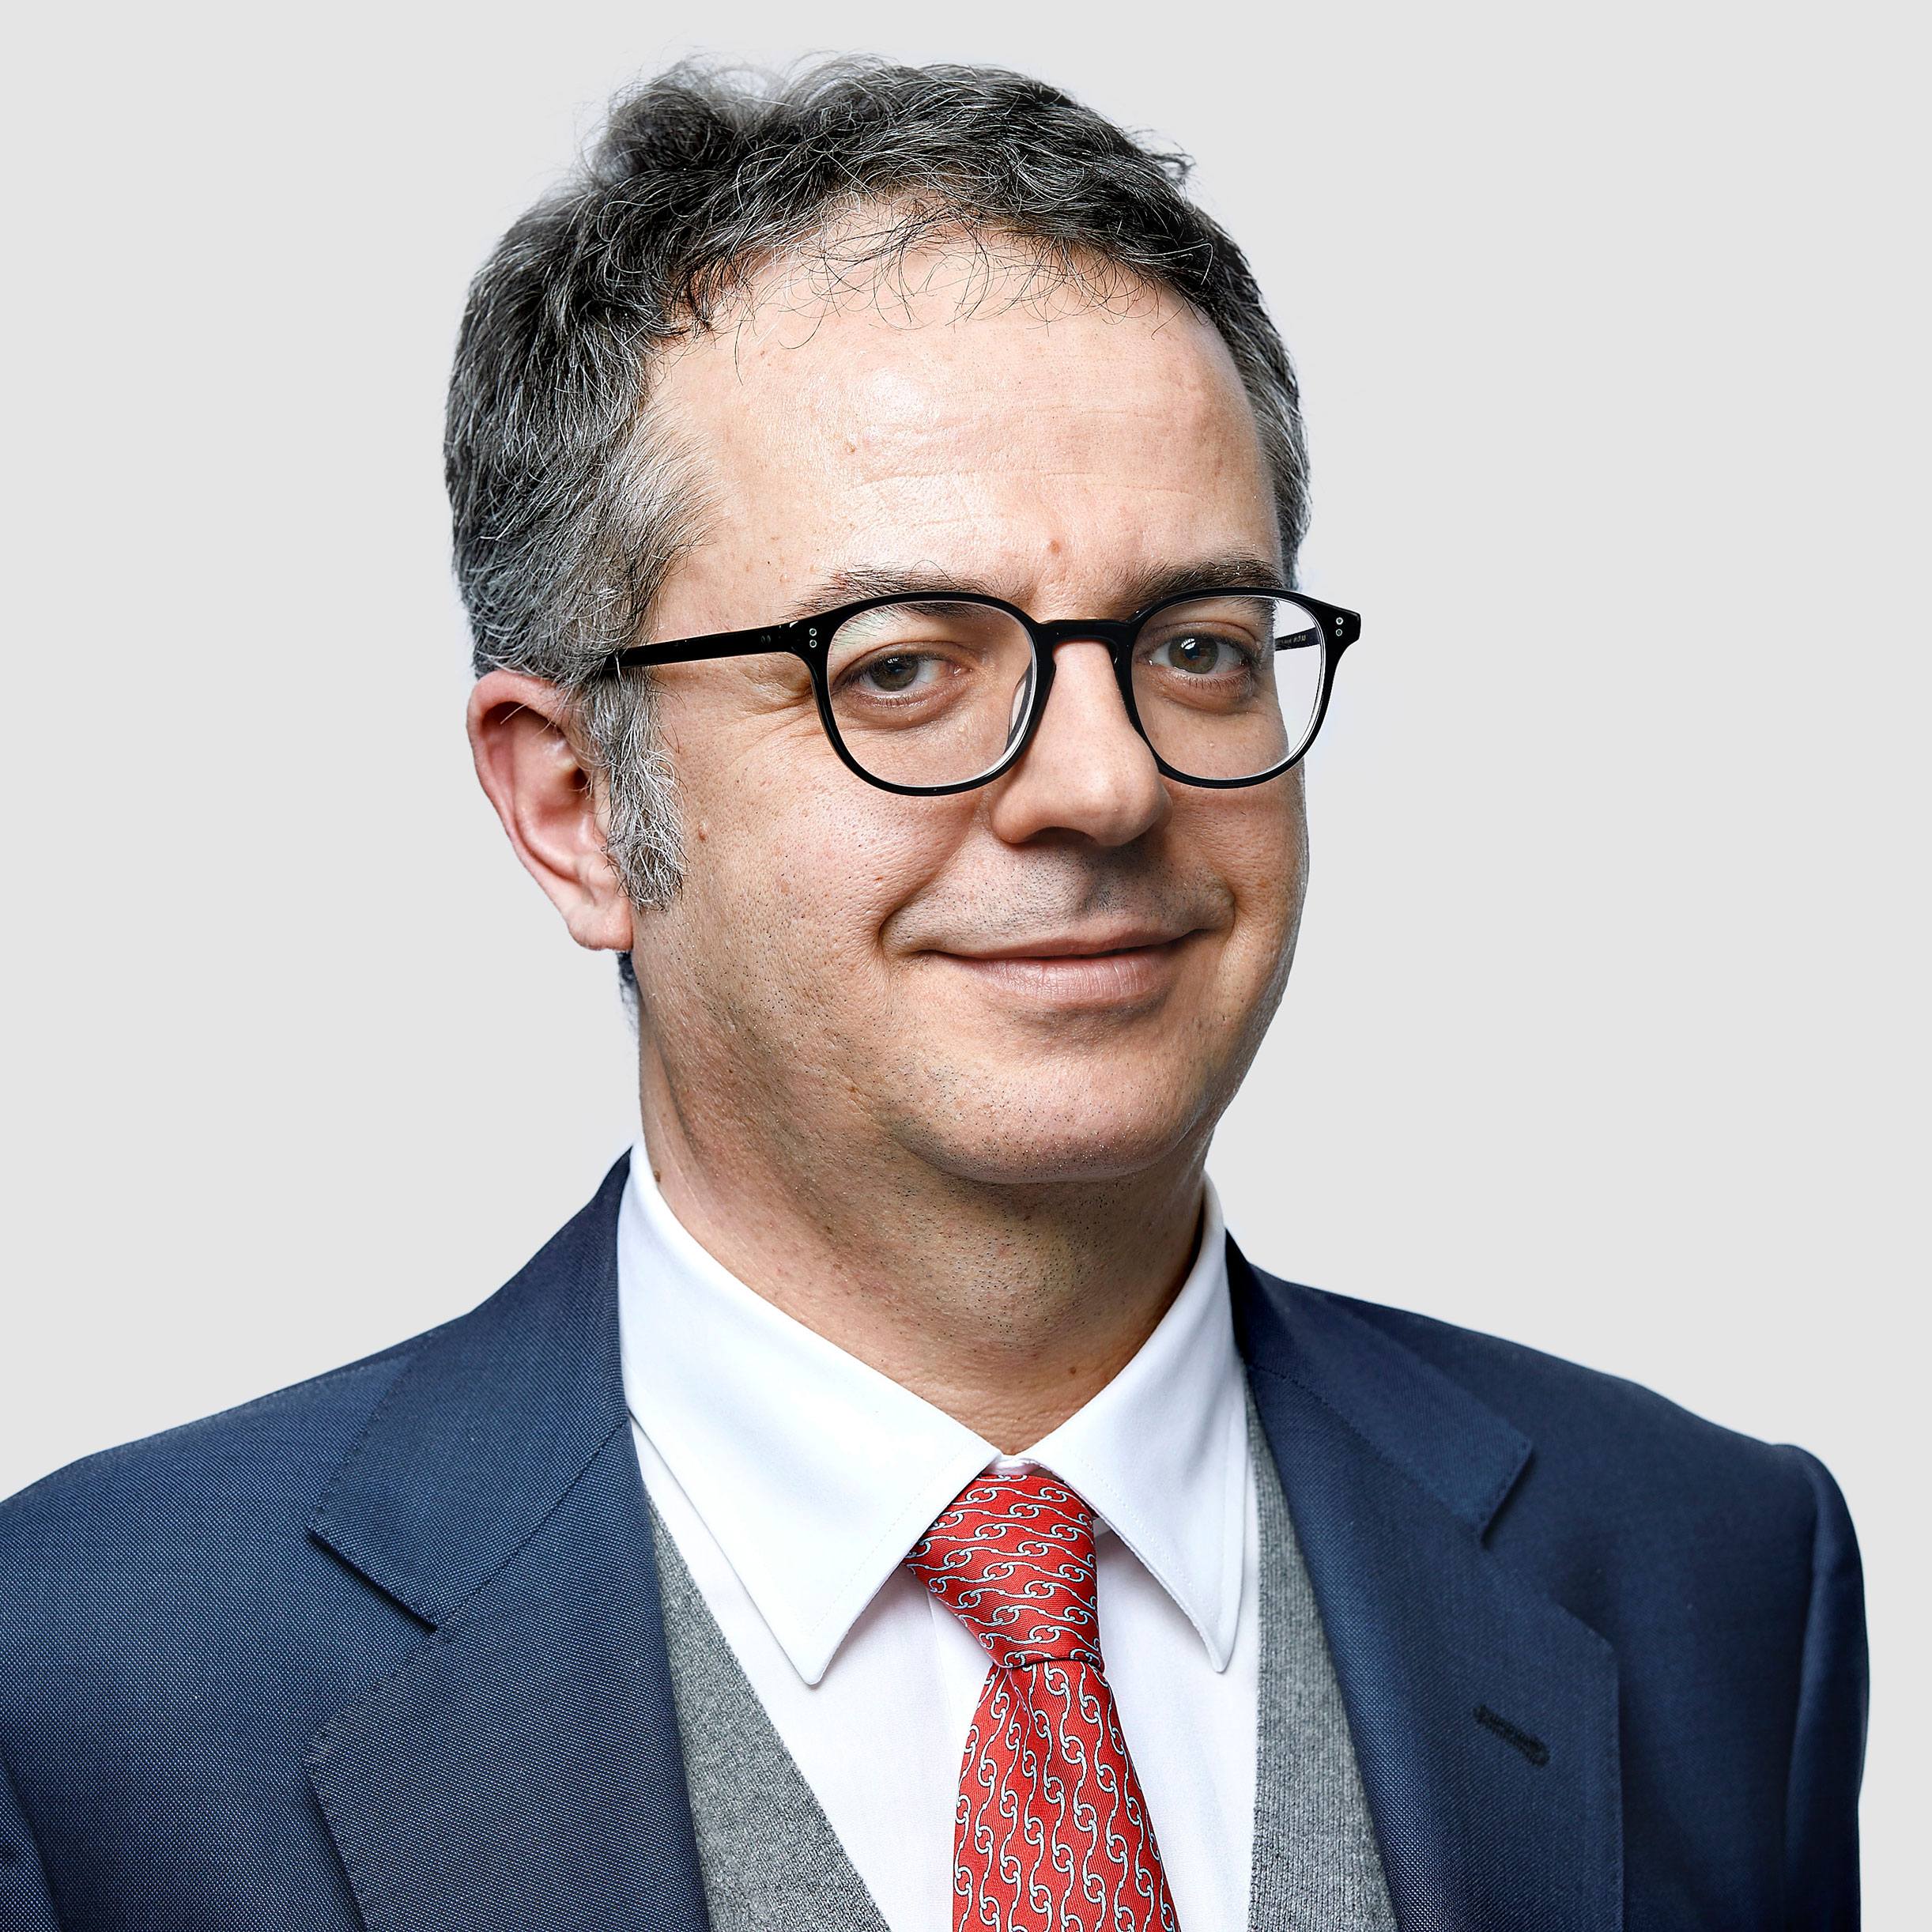 Donato Saponara, Head of Allianz Real Estate Italy